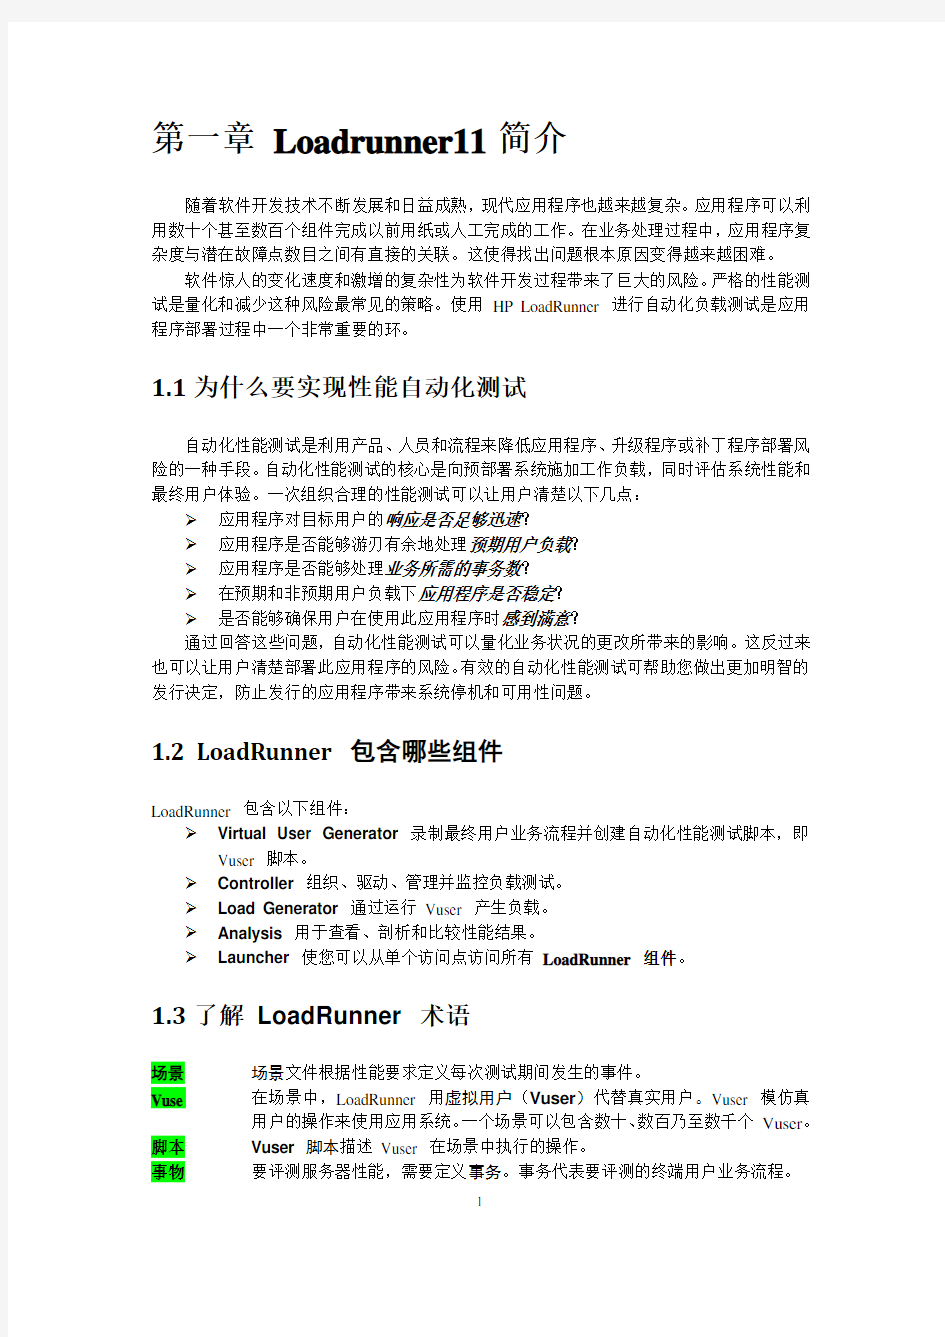 LoadRunner11操作手册整理_2012.06.30